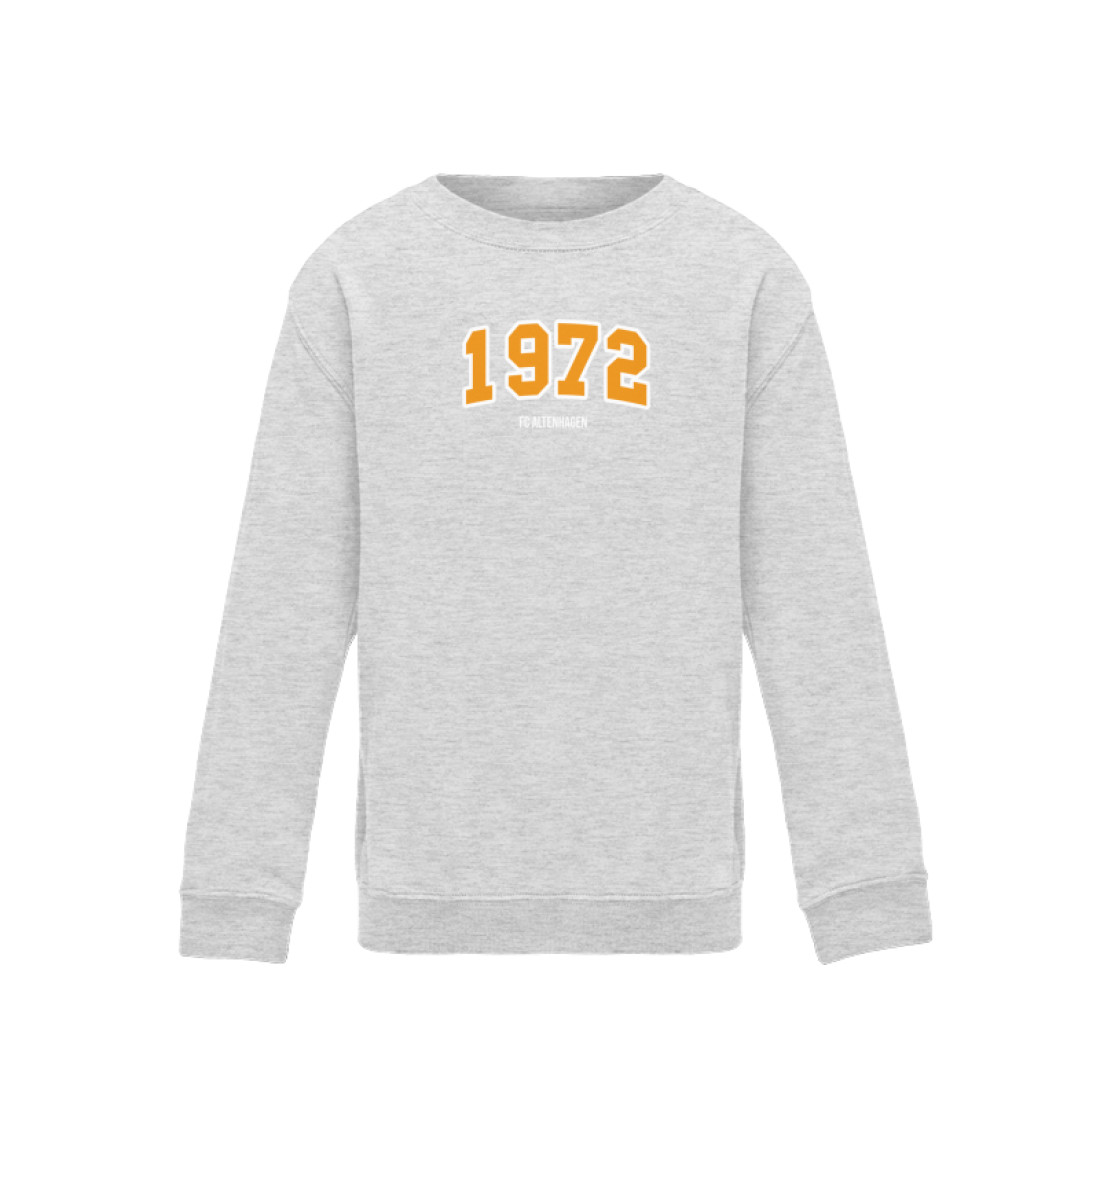 1972 - Kinder Sweatshirt-6892